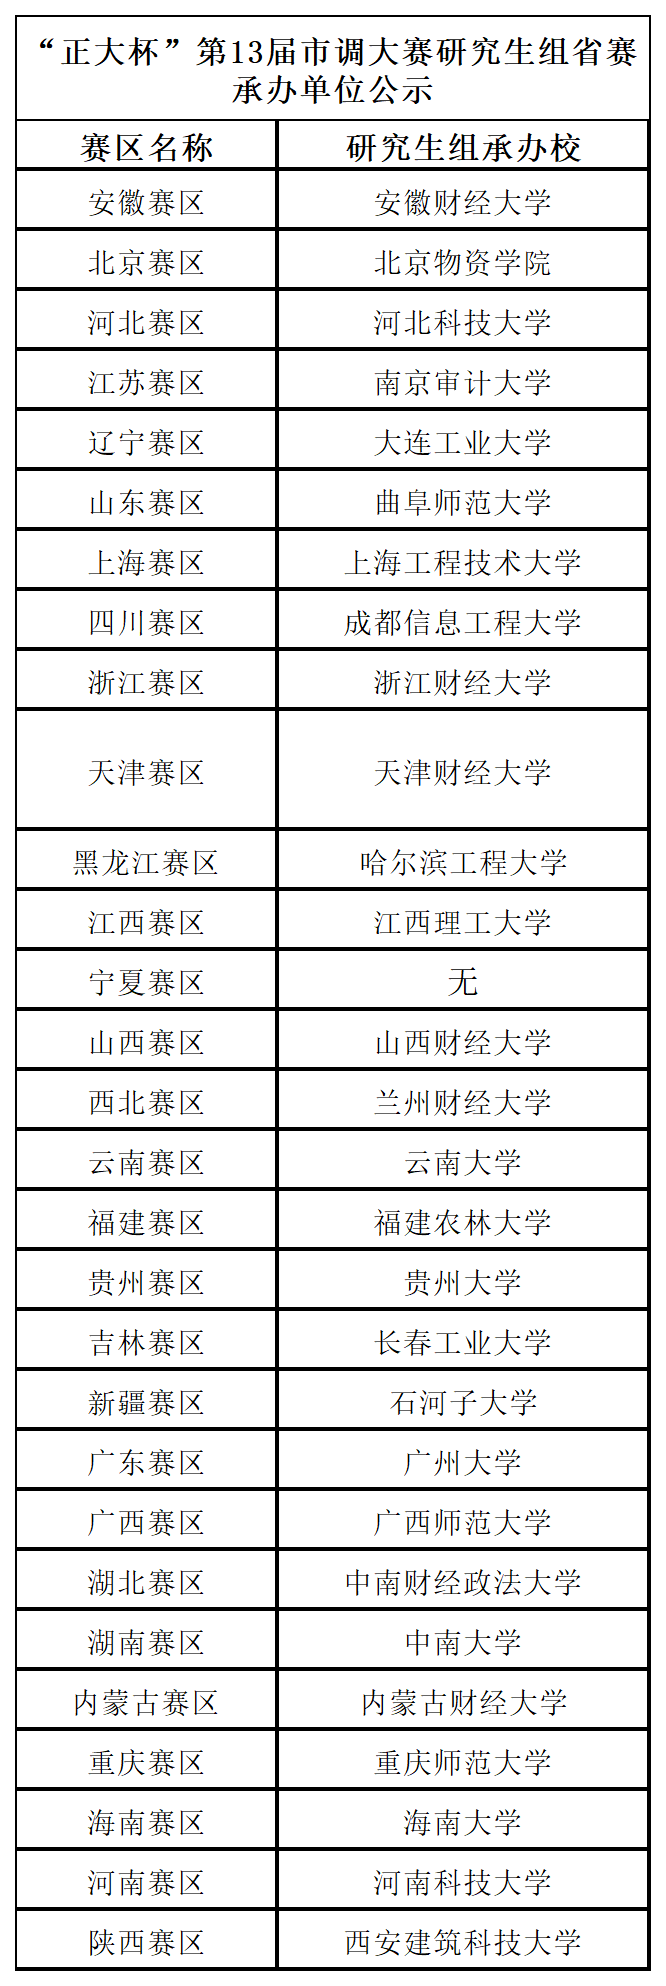 赛区承办单位名单（给铁）9.23_研究生组.png